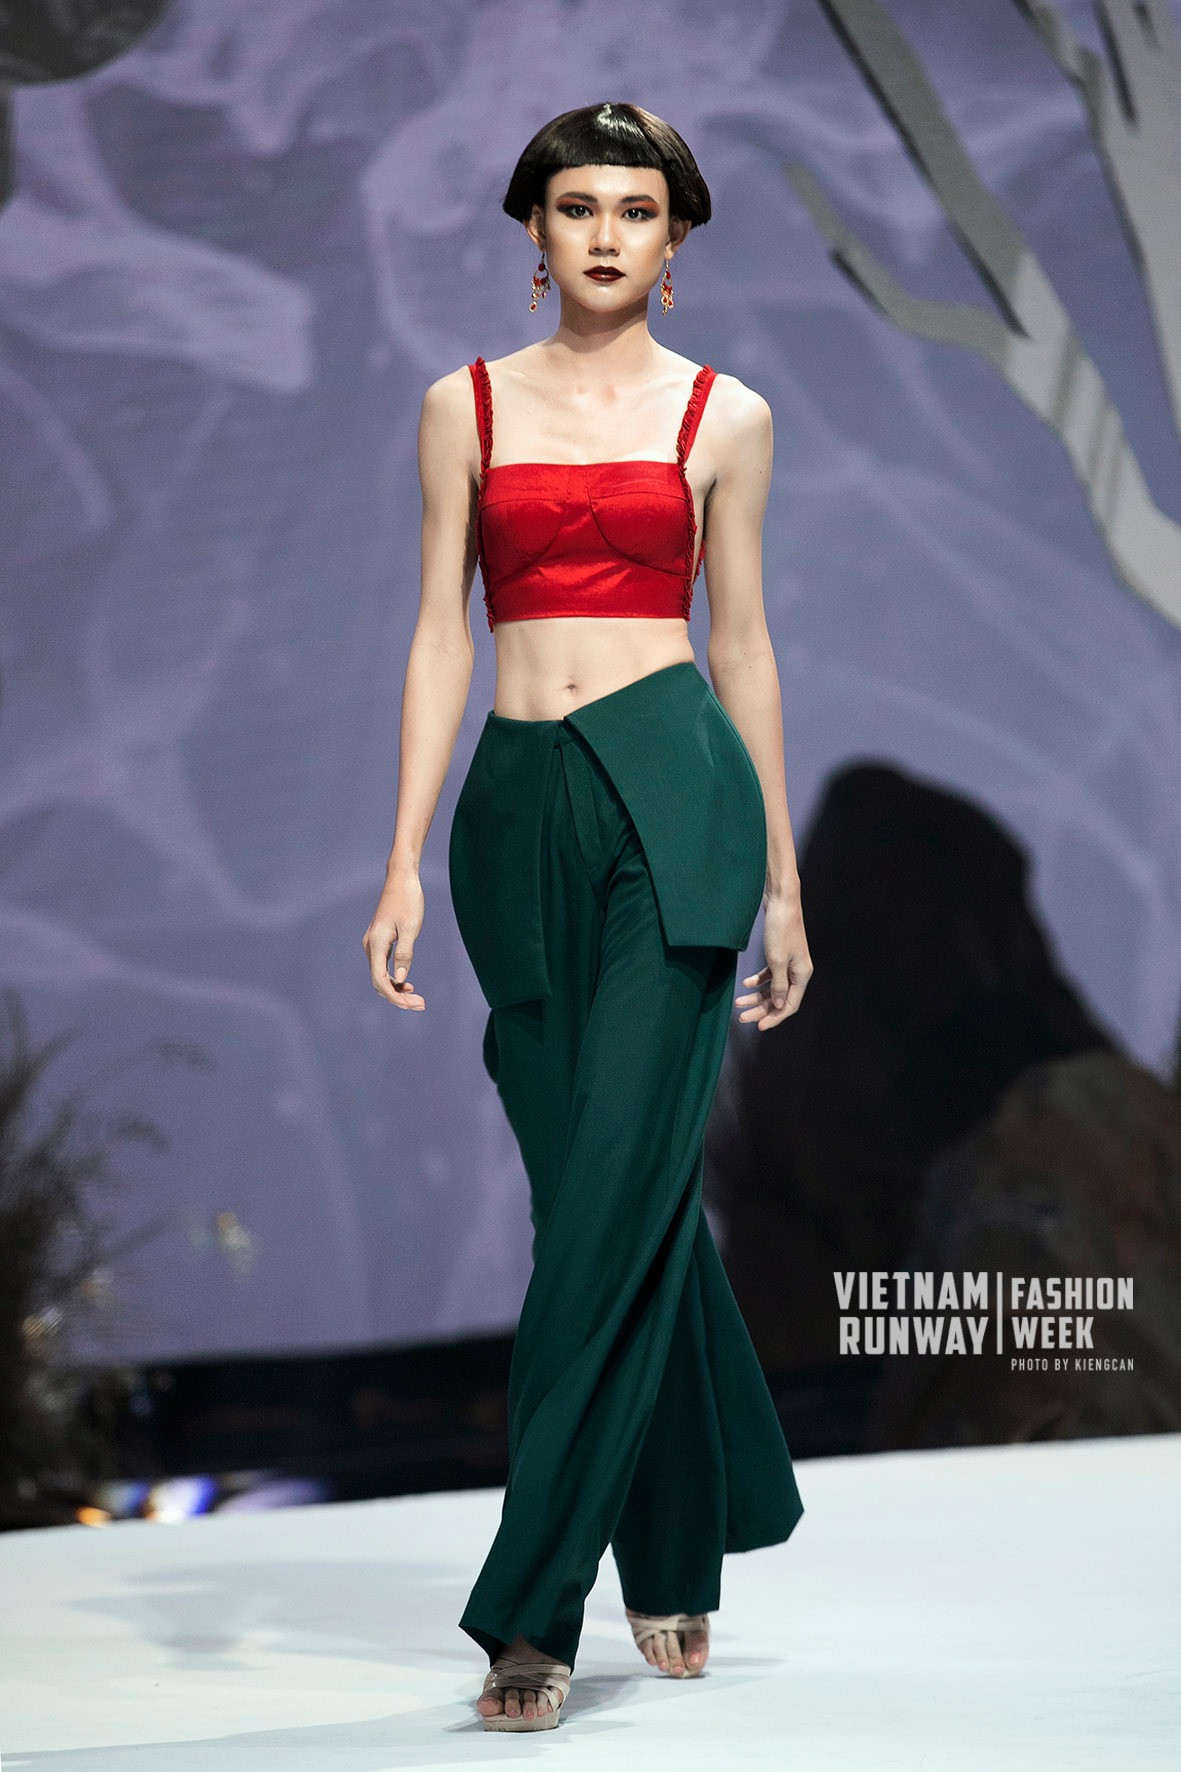 Thiếu nữ Bến Tre xinh đẹp cao 1m81 gây sốt tại Hoa hậu Hoàn vũ Việt Nam - 13